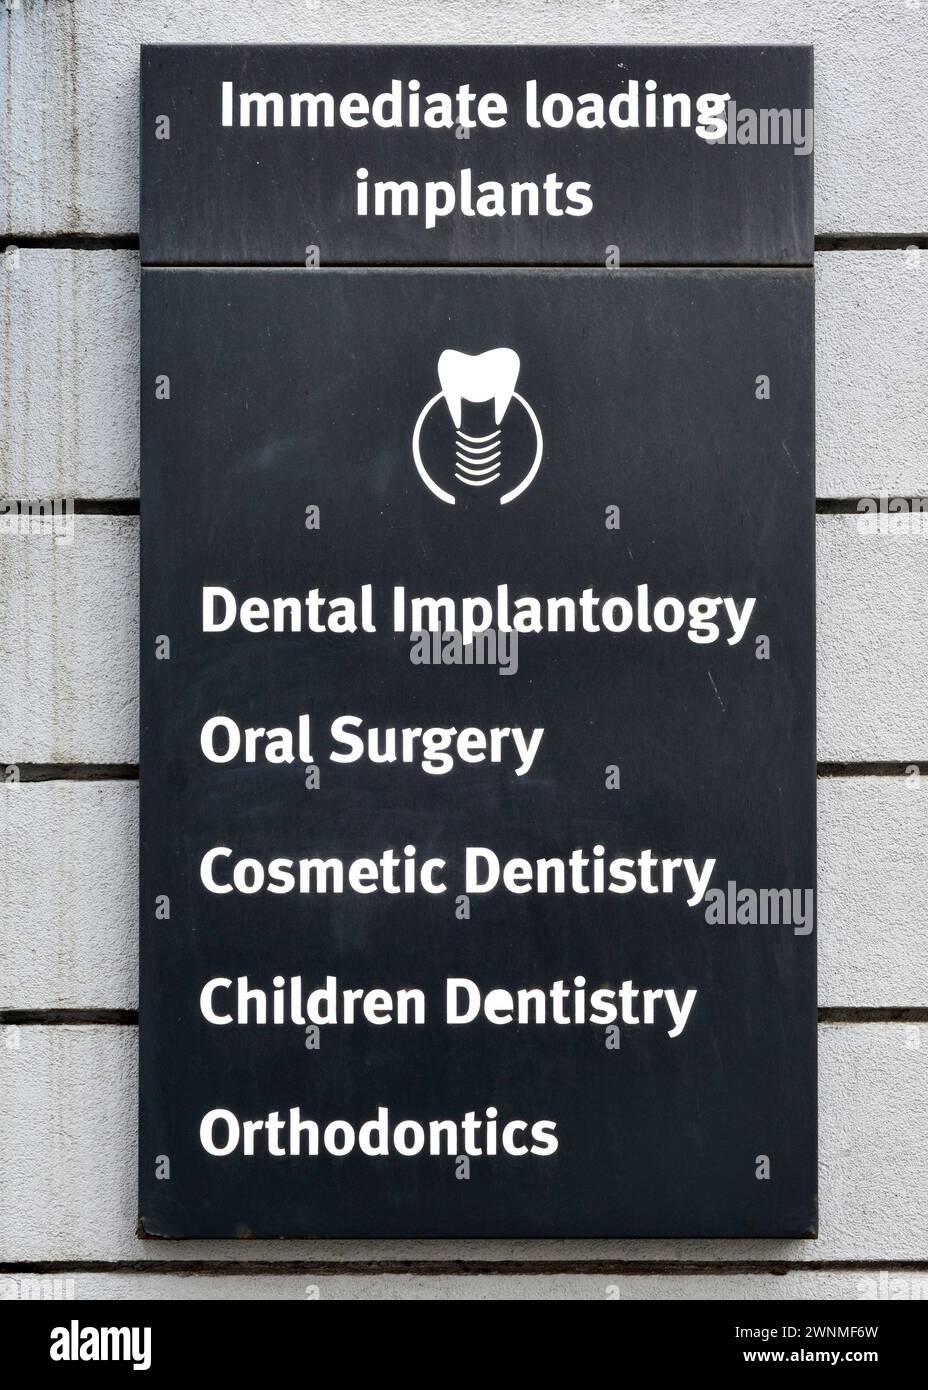 Sofortige Verladung von Implantaten, Zahnimplantologie, Oralchirurgie, kosmetische Zahnheilkunde, Kinderzahnheilkunde, Kieferorthopädische Zeichen in der zahnärztlichen Praxis Stockfoto